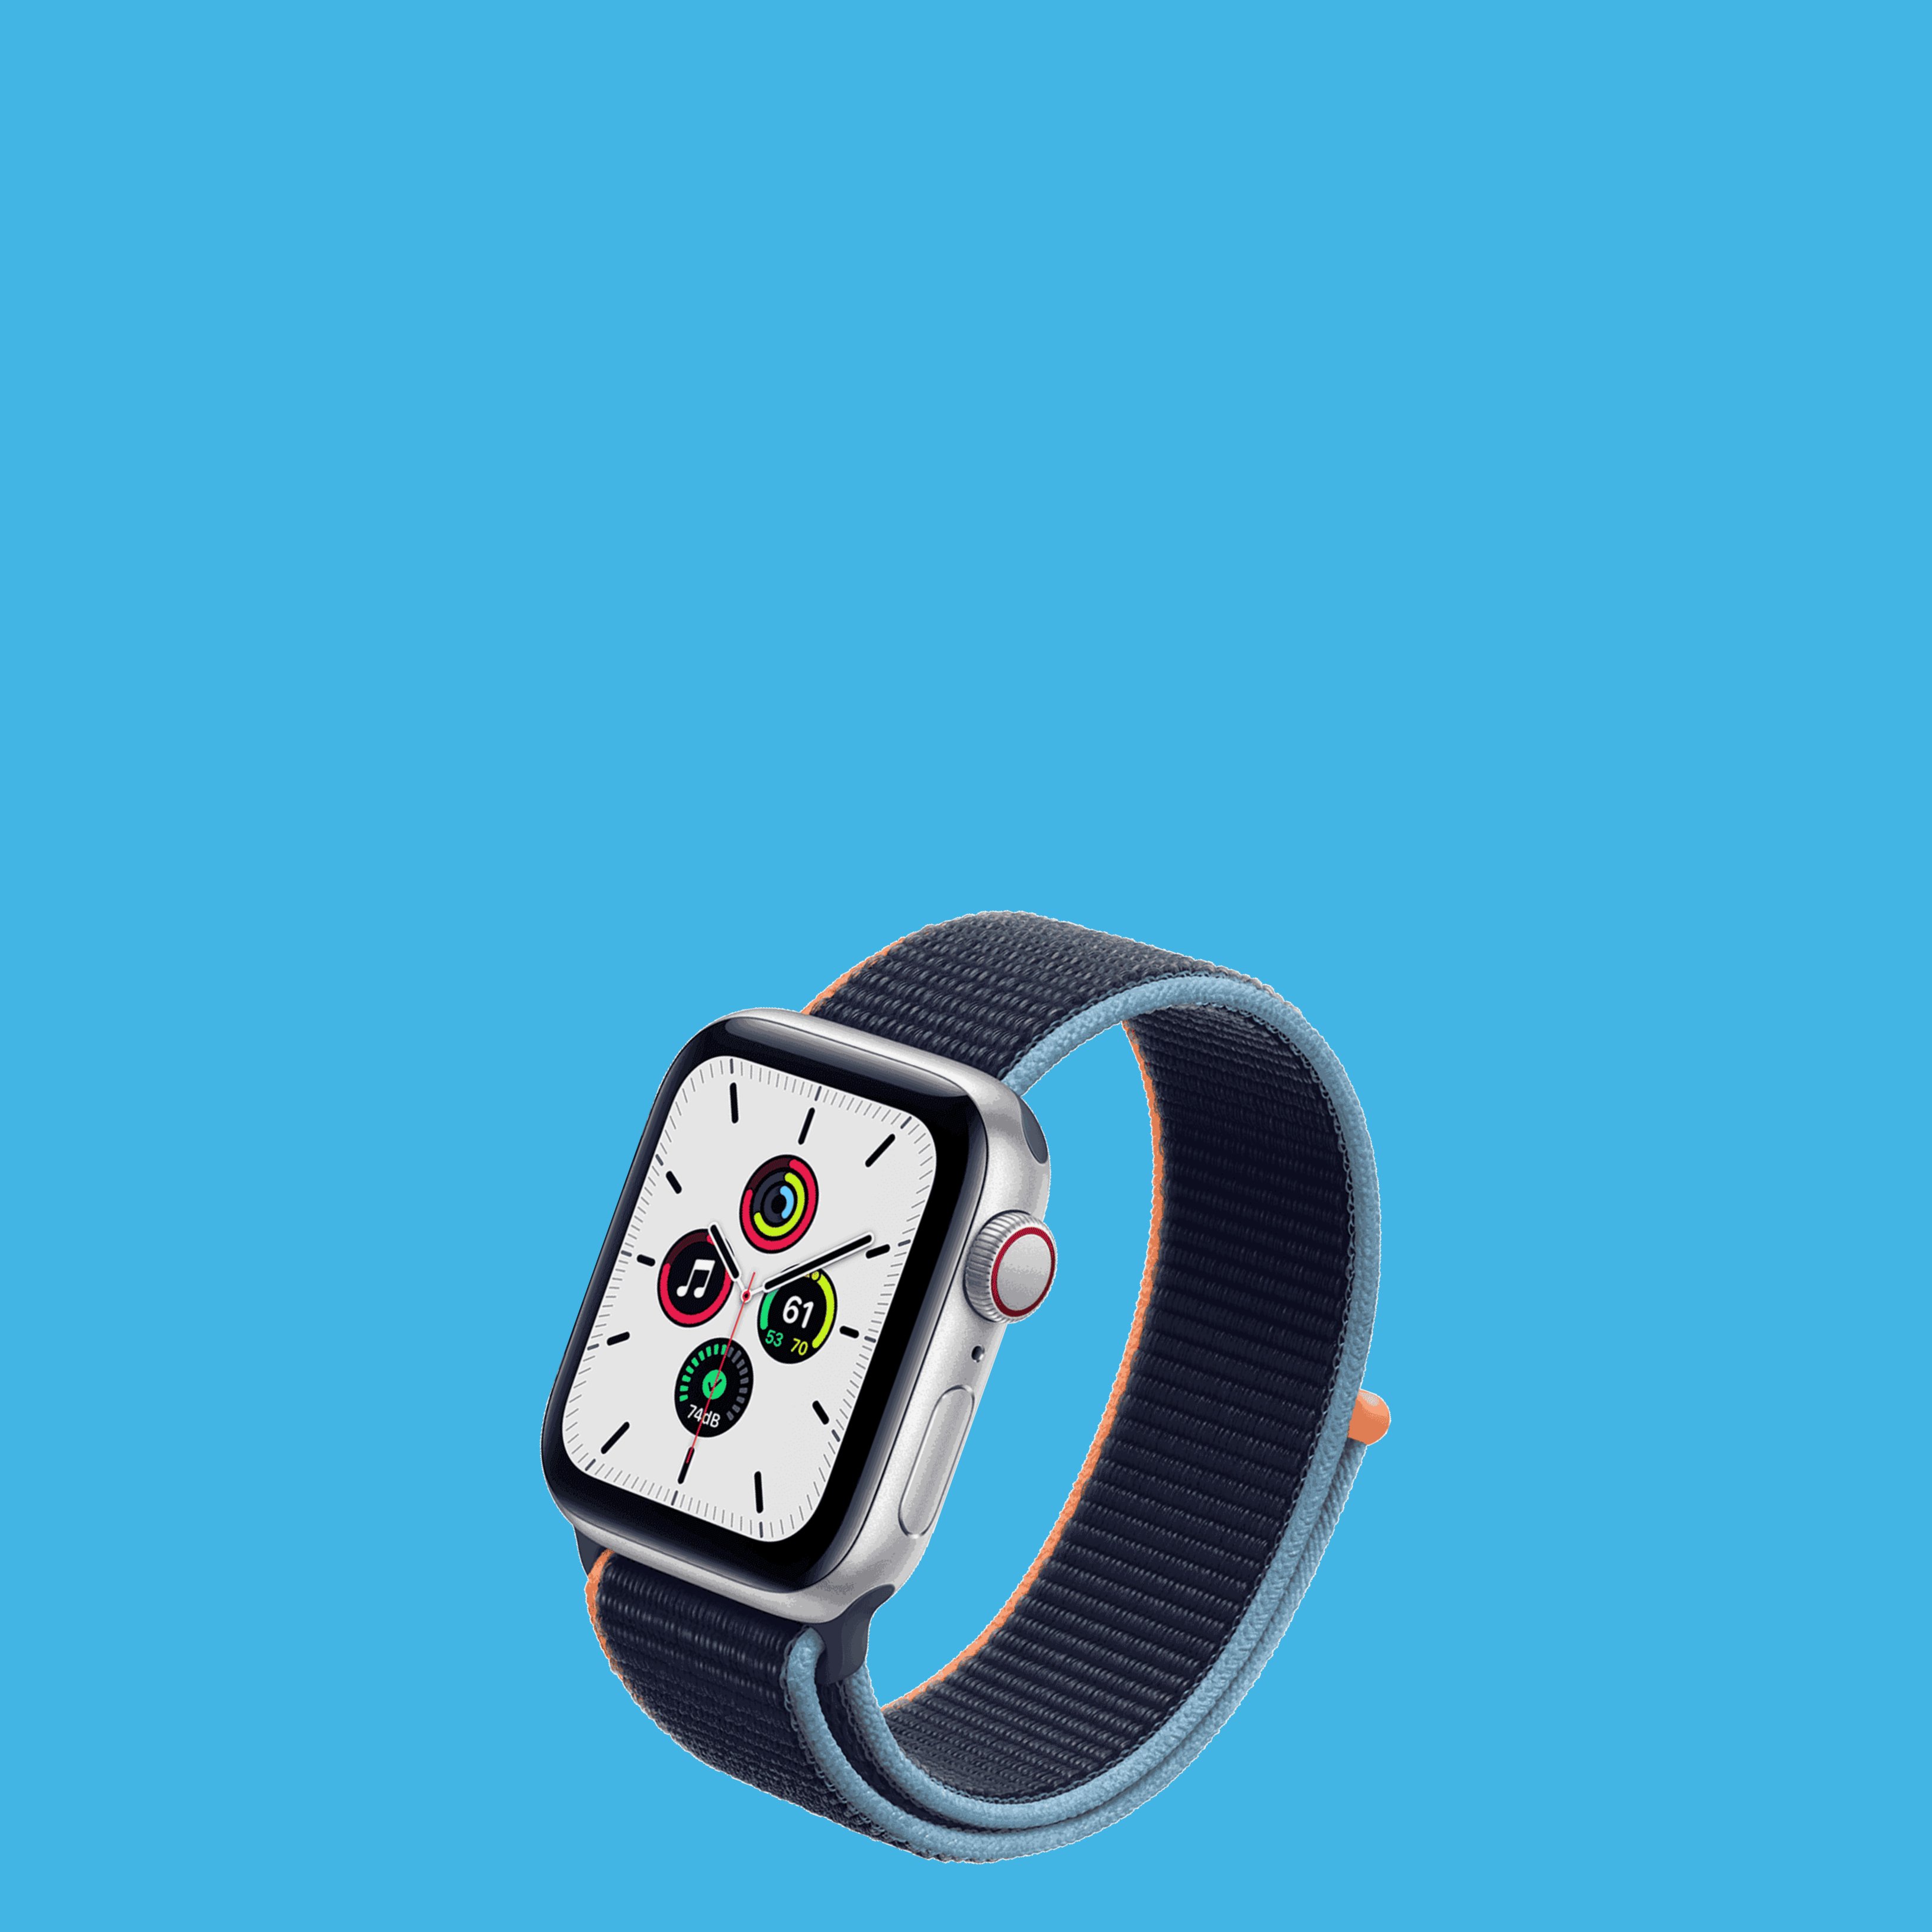 Apple Watch SE, un nuevo smartwatch a un precio asequible